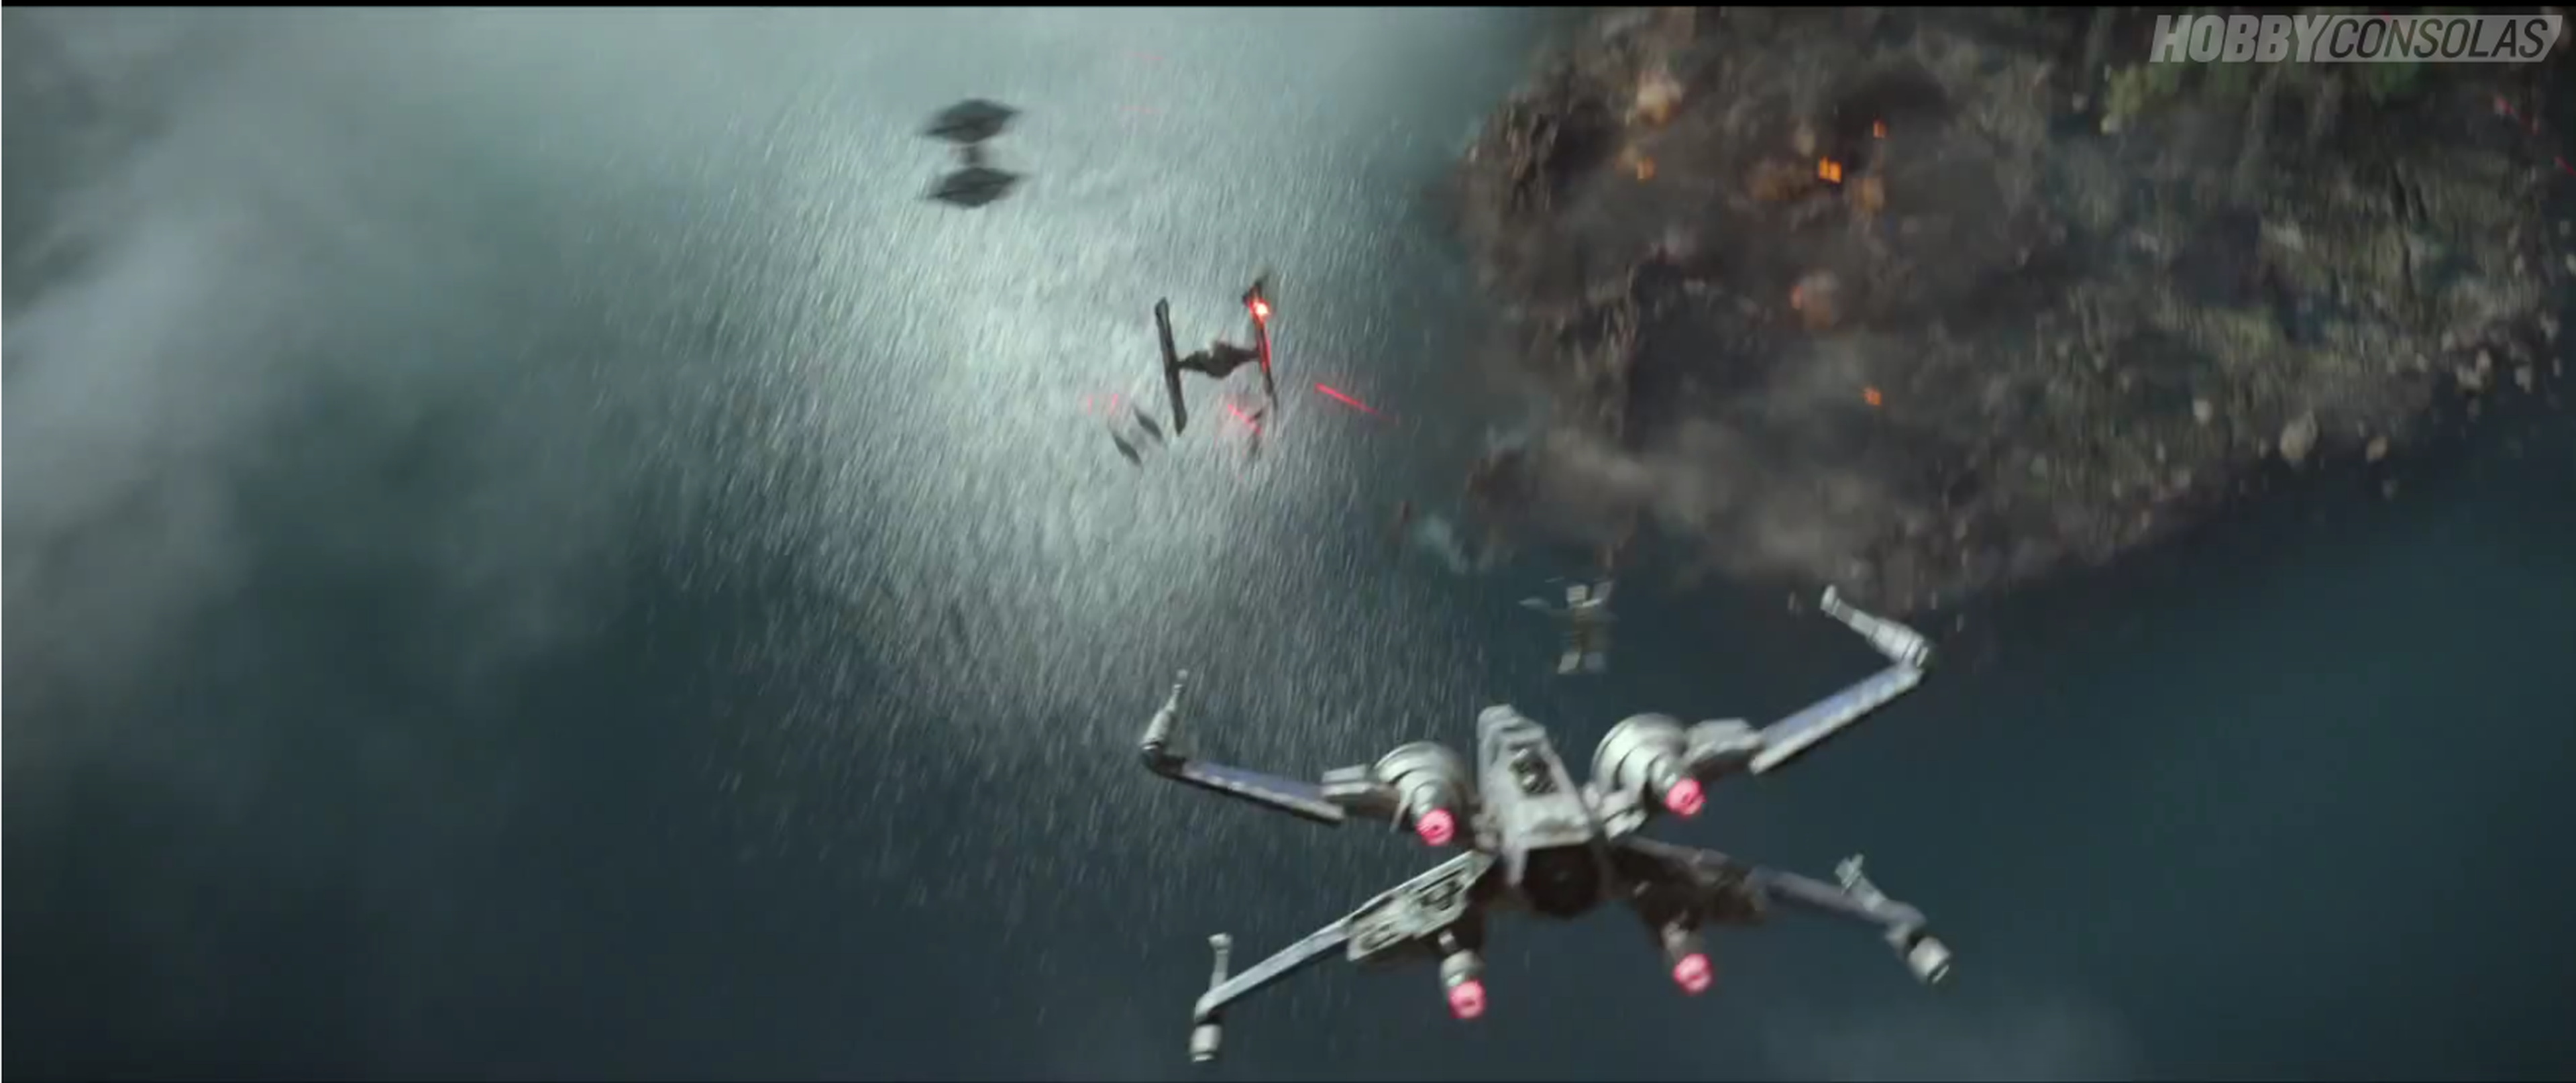 Star Wars Episodio VII El Despertar de la Fuerza: Disney Infinity 3.0 vs película